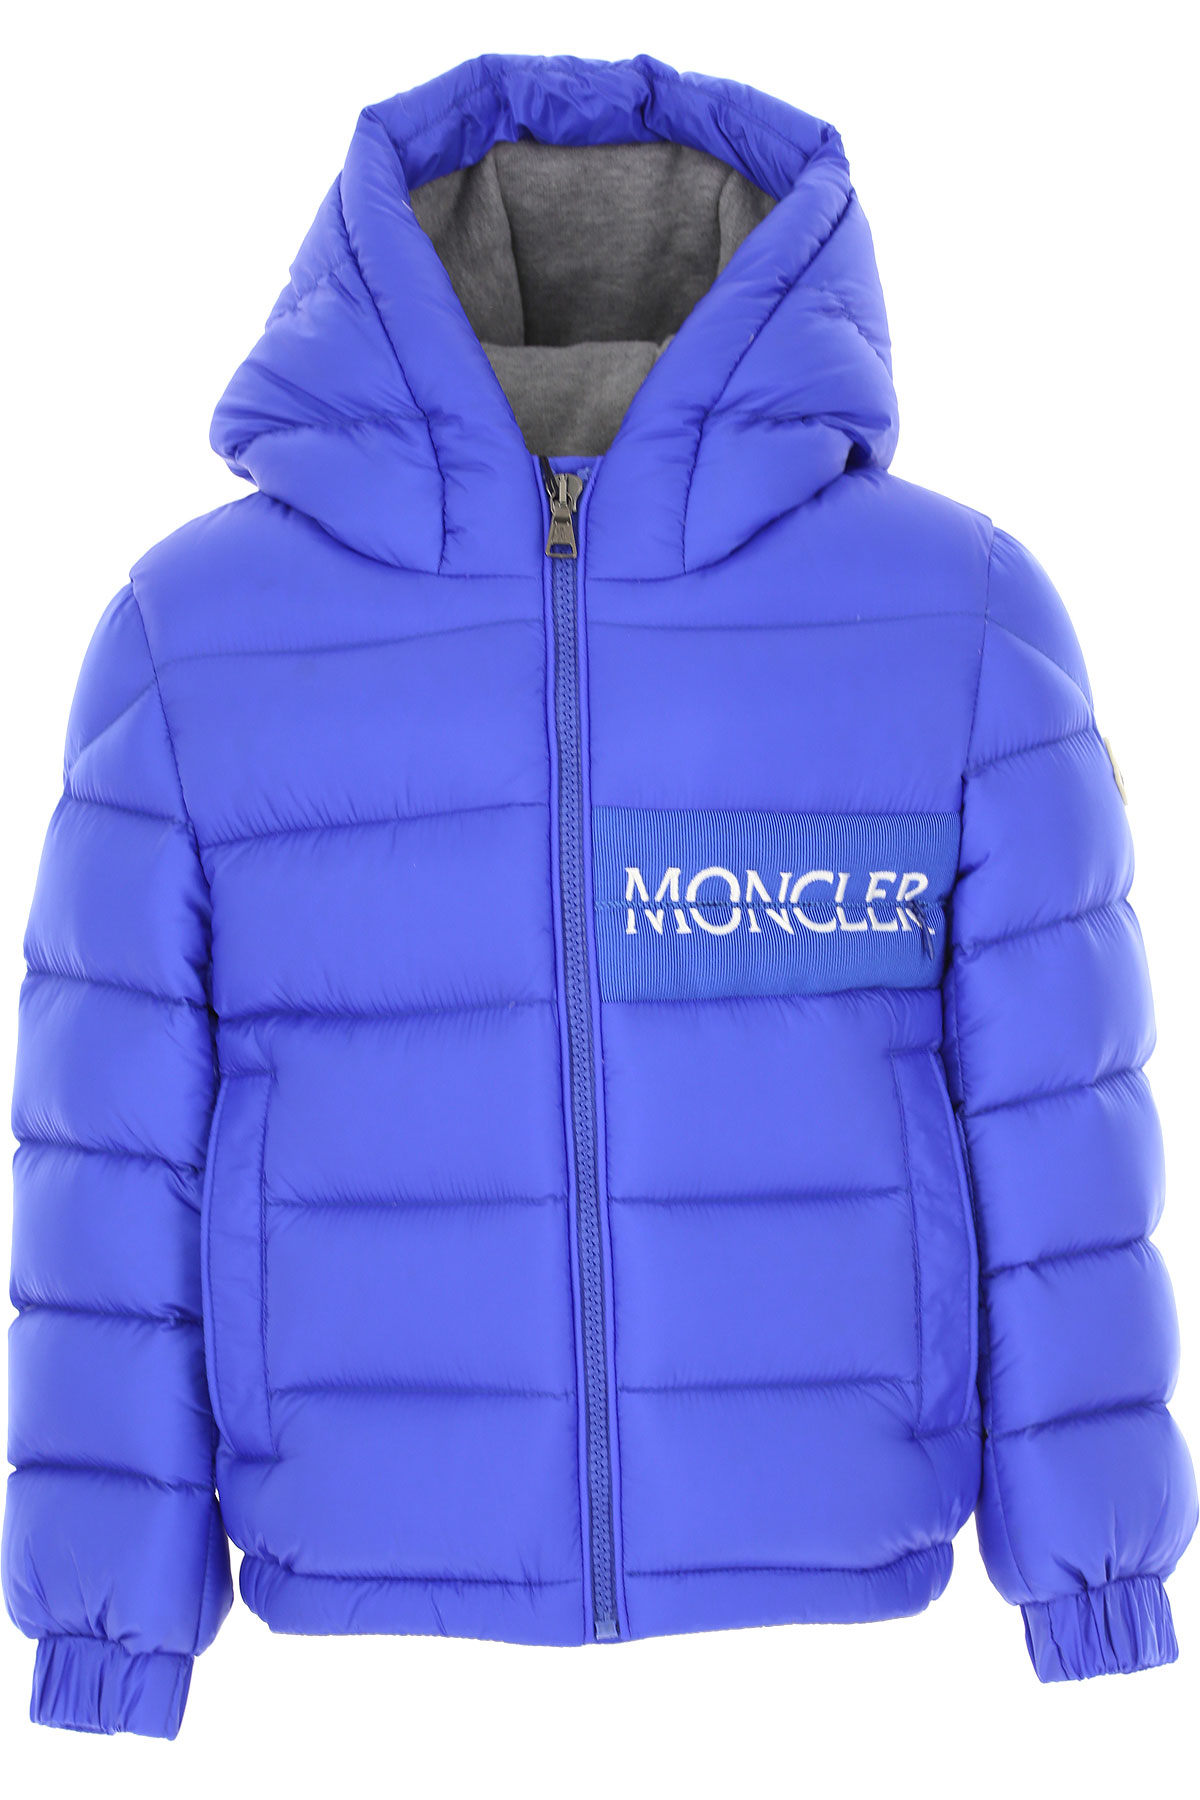 Moncler Kinder Daunen Jacke für Jungen, Soft Shell Ski Jacken Günstig im Sale, Bluette, Polyamid, 2017, 10Y 12Y 4Y 5Y 8Y